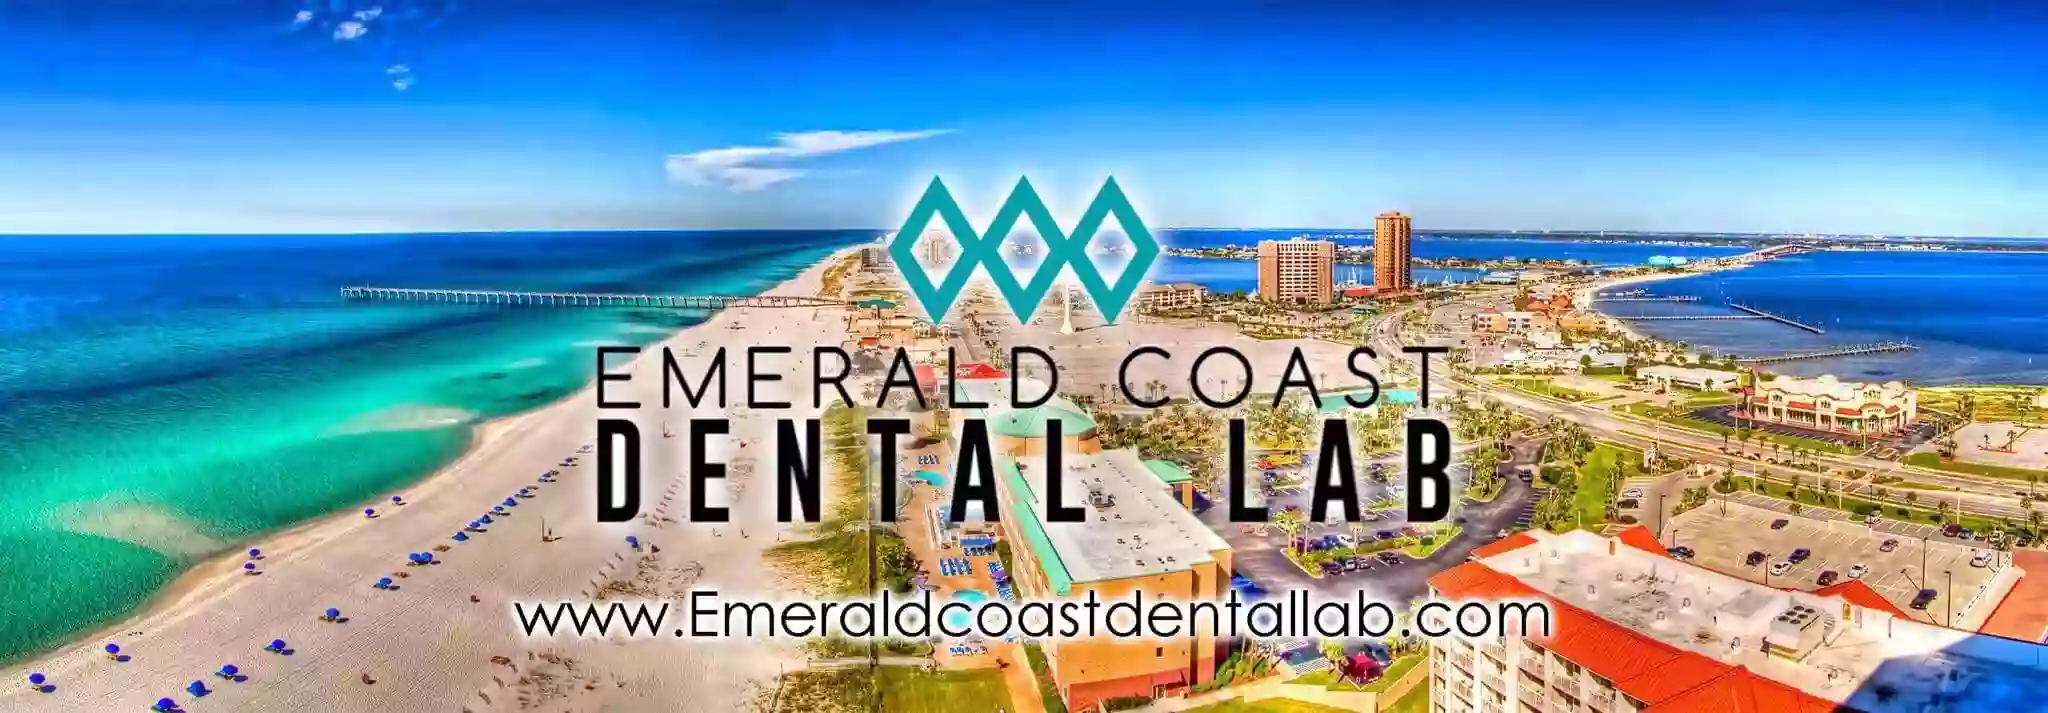 Emerald Coast Dental Lab